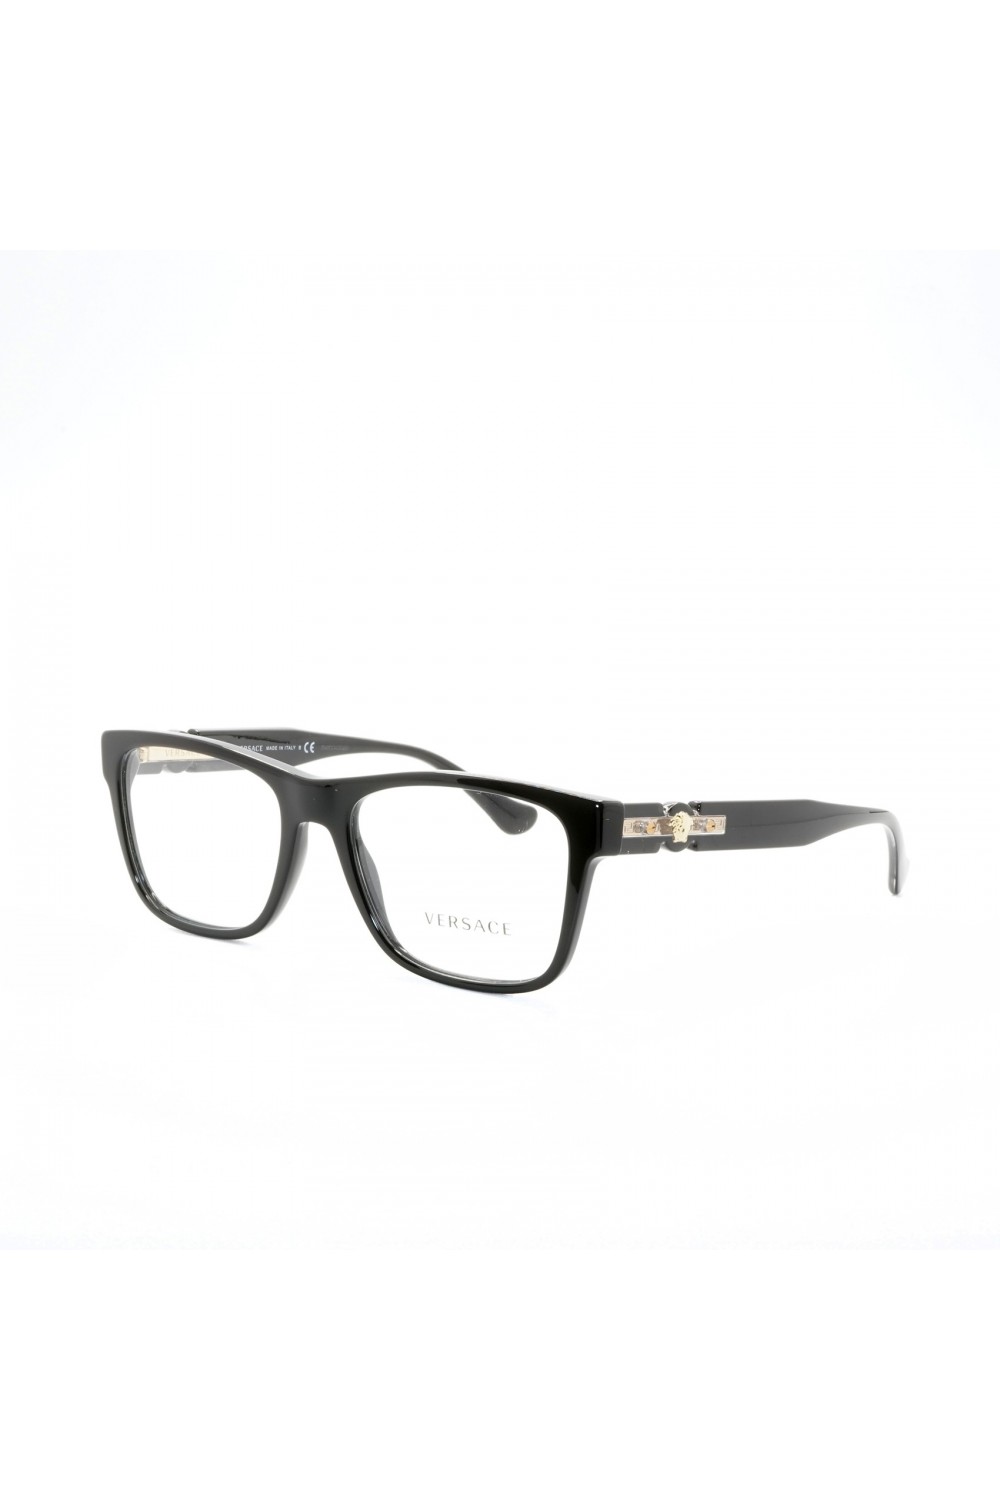 Versace - Occhiali da vista in celluloide rettangolari per uomo nero - 3303 GB1